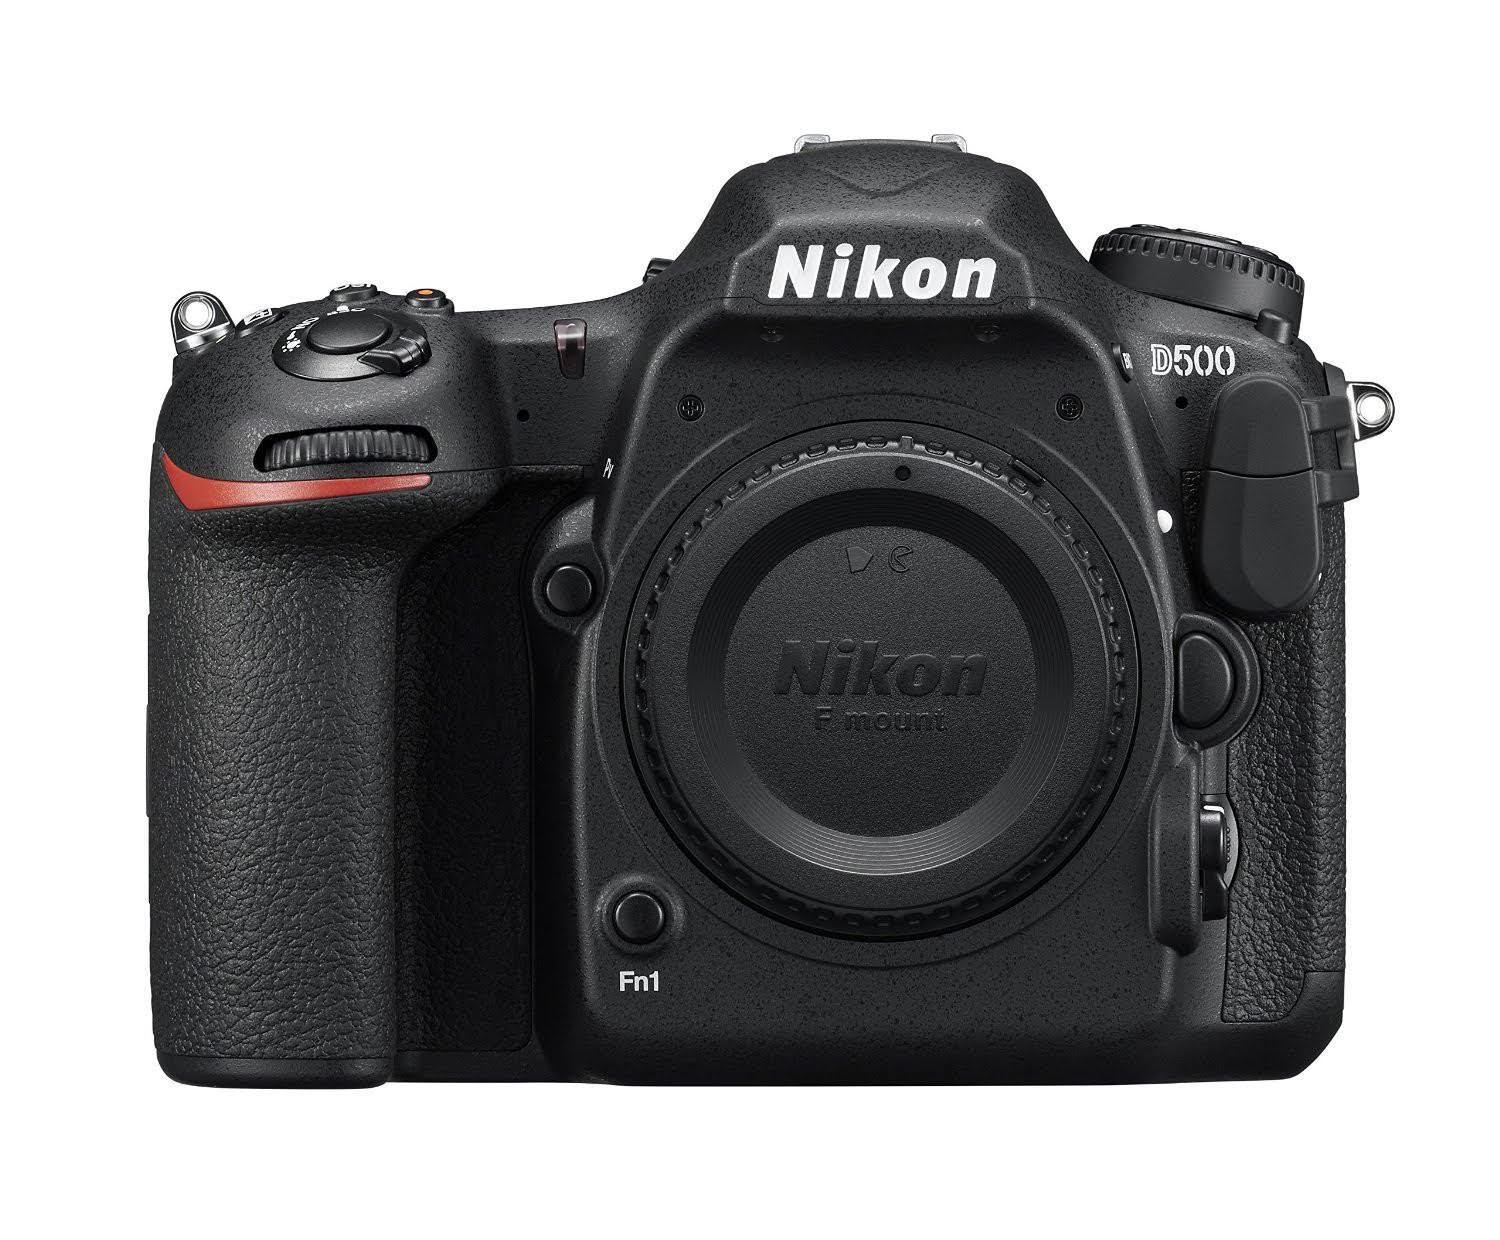 Nikon Цифровая зеркальная фотокамера D500 формата DX (только корпус)